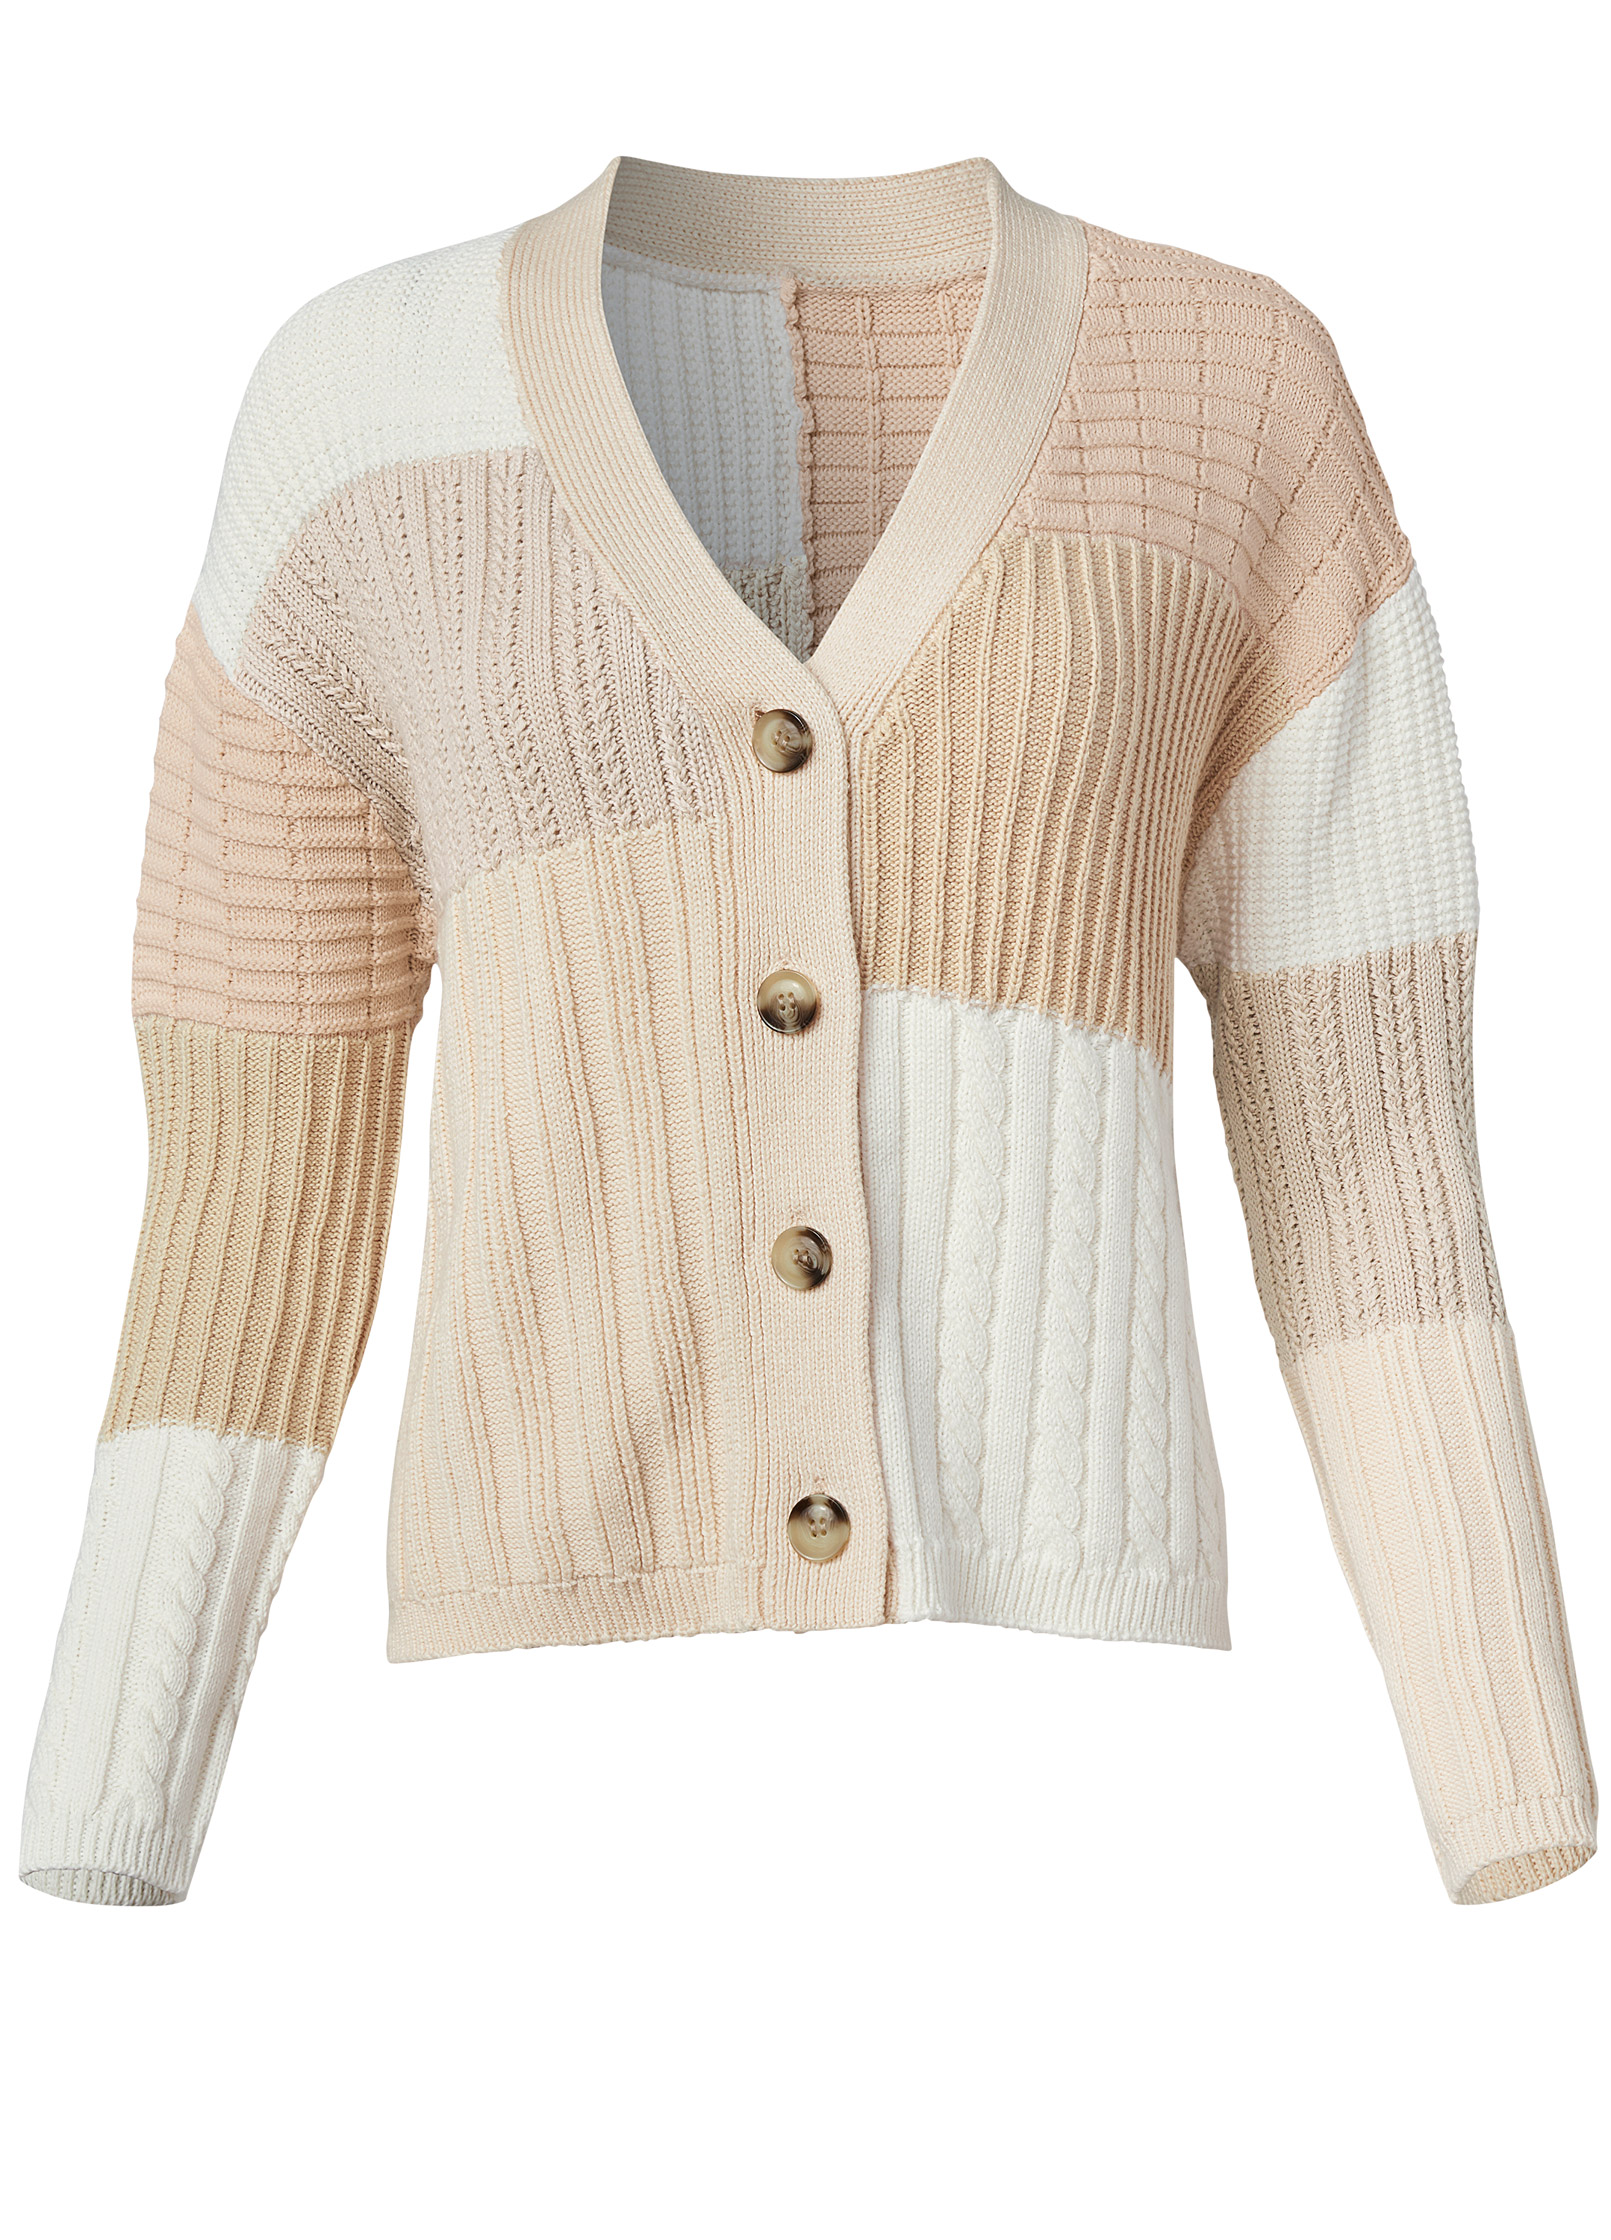 Patchwork Cable Knit Cardigan in Cream Multi | VENUS